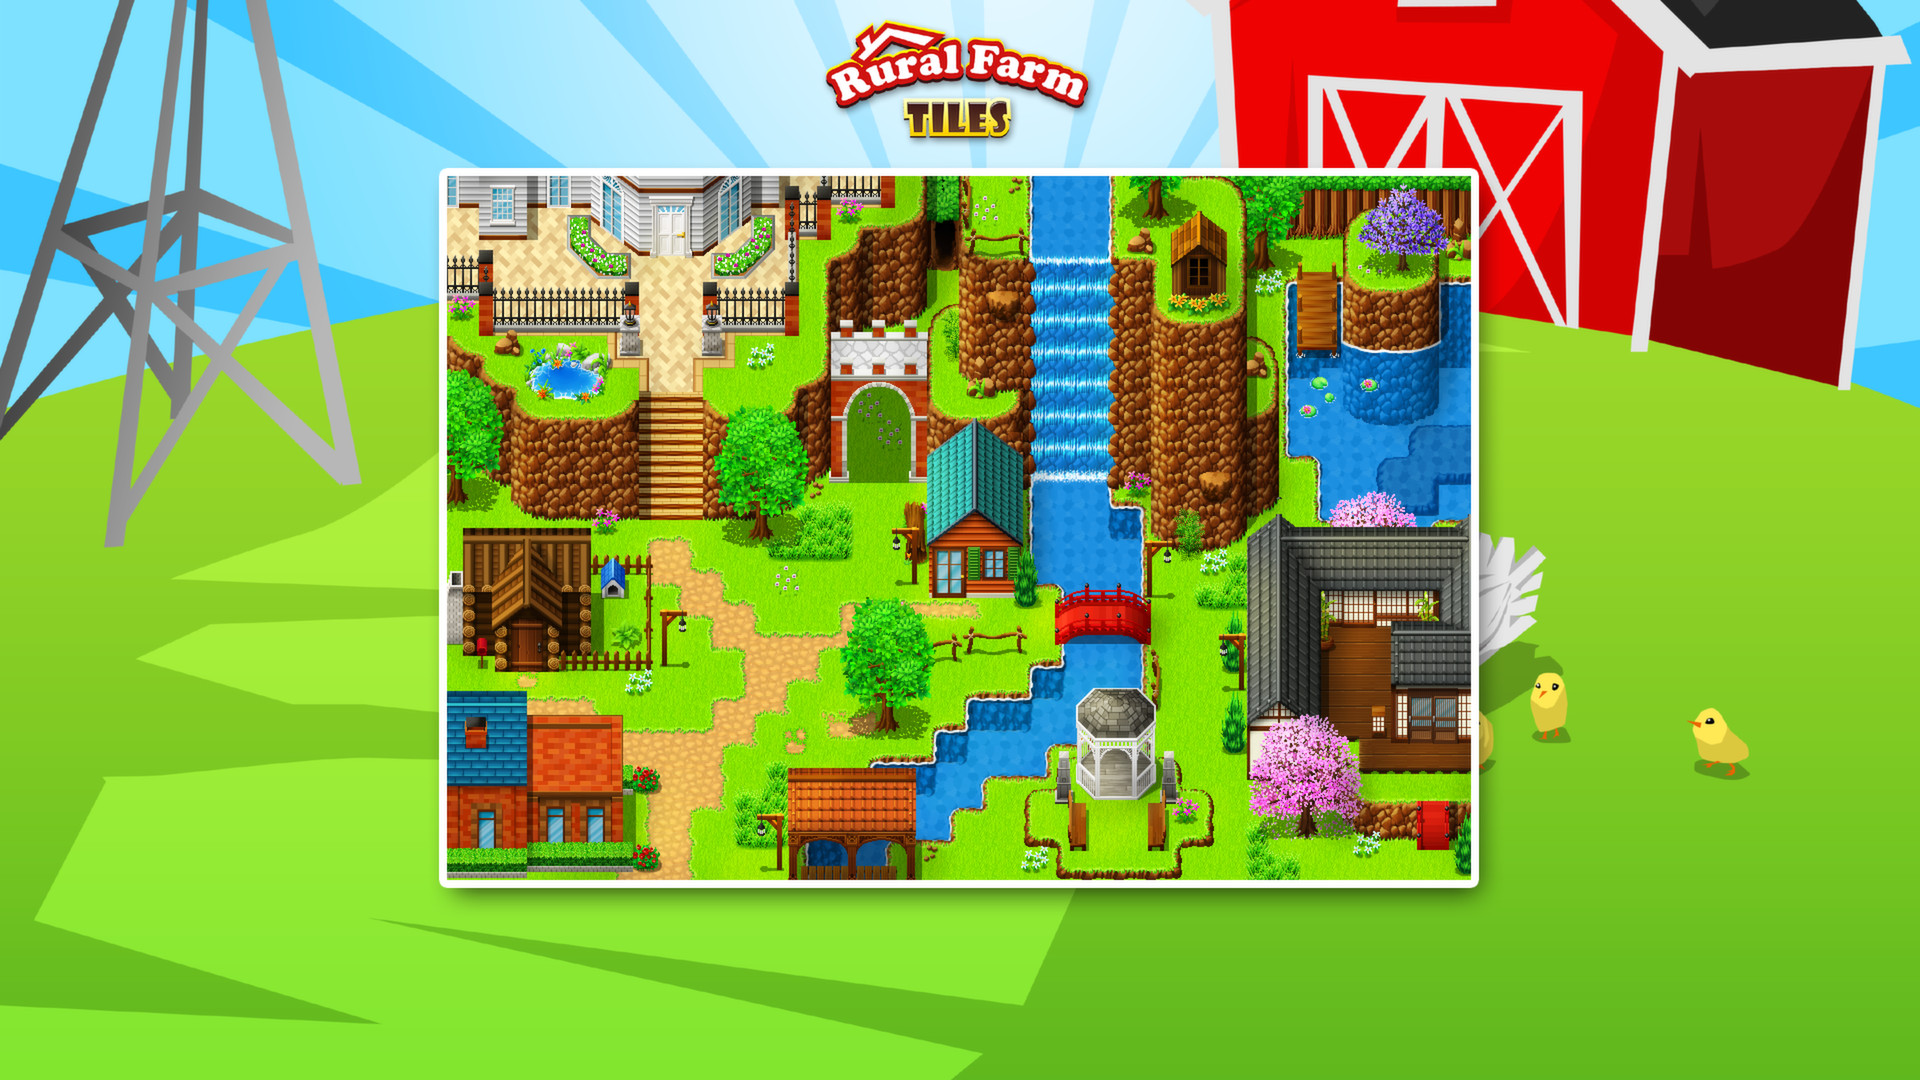 RPG Maker VX Ace - Rural Farm Tiles Resource Pack screenshot